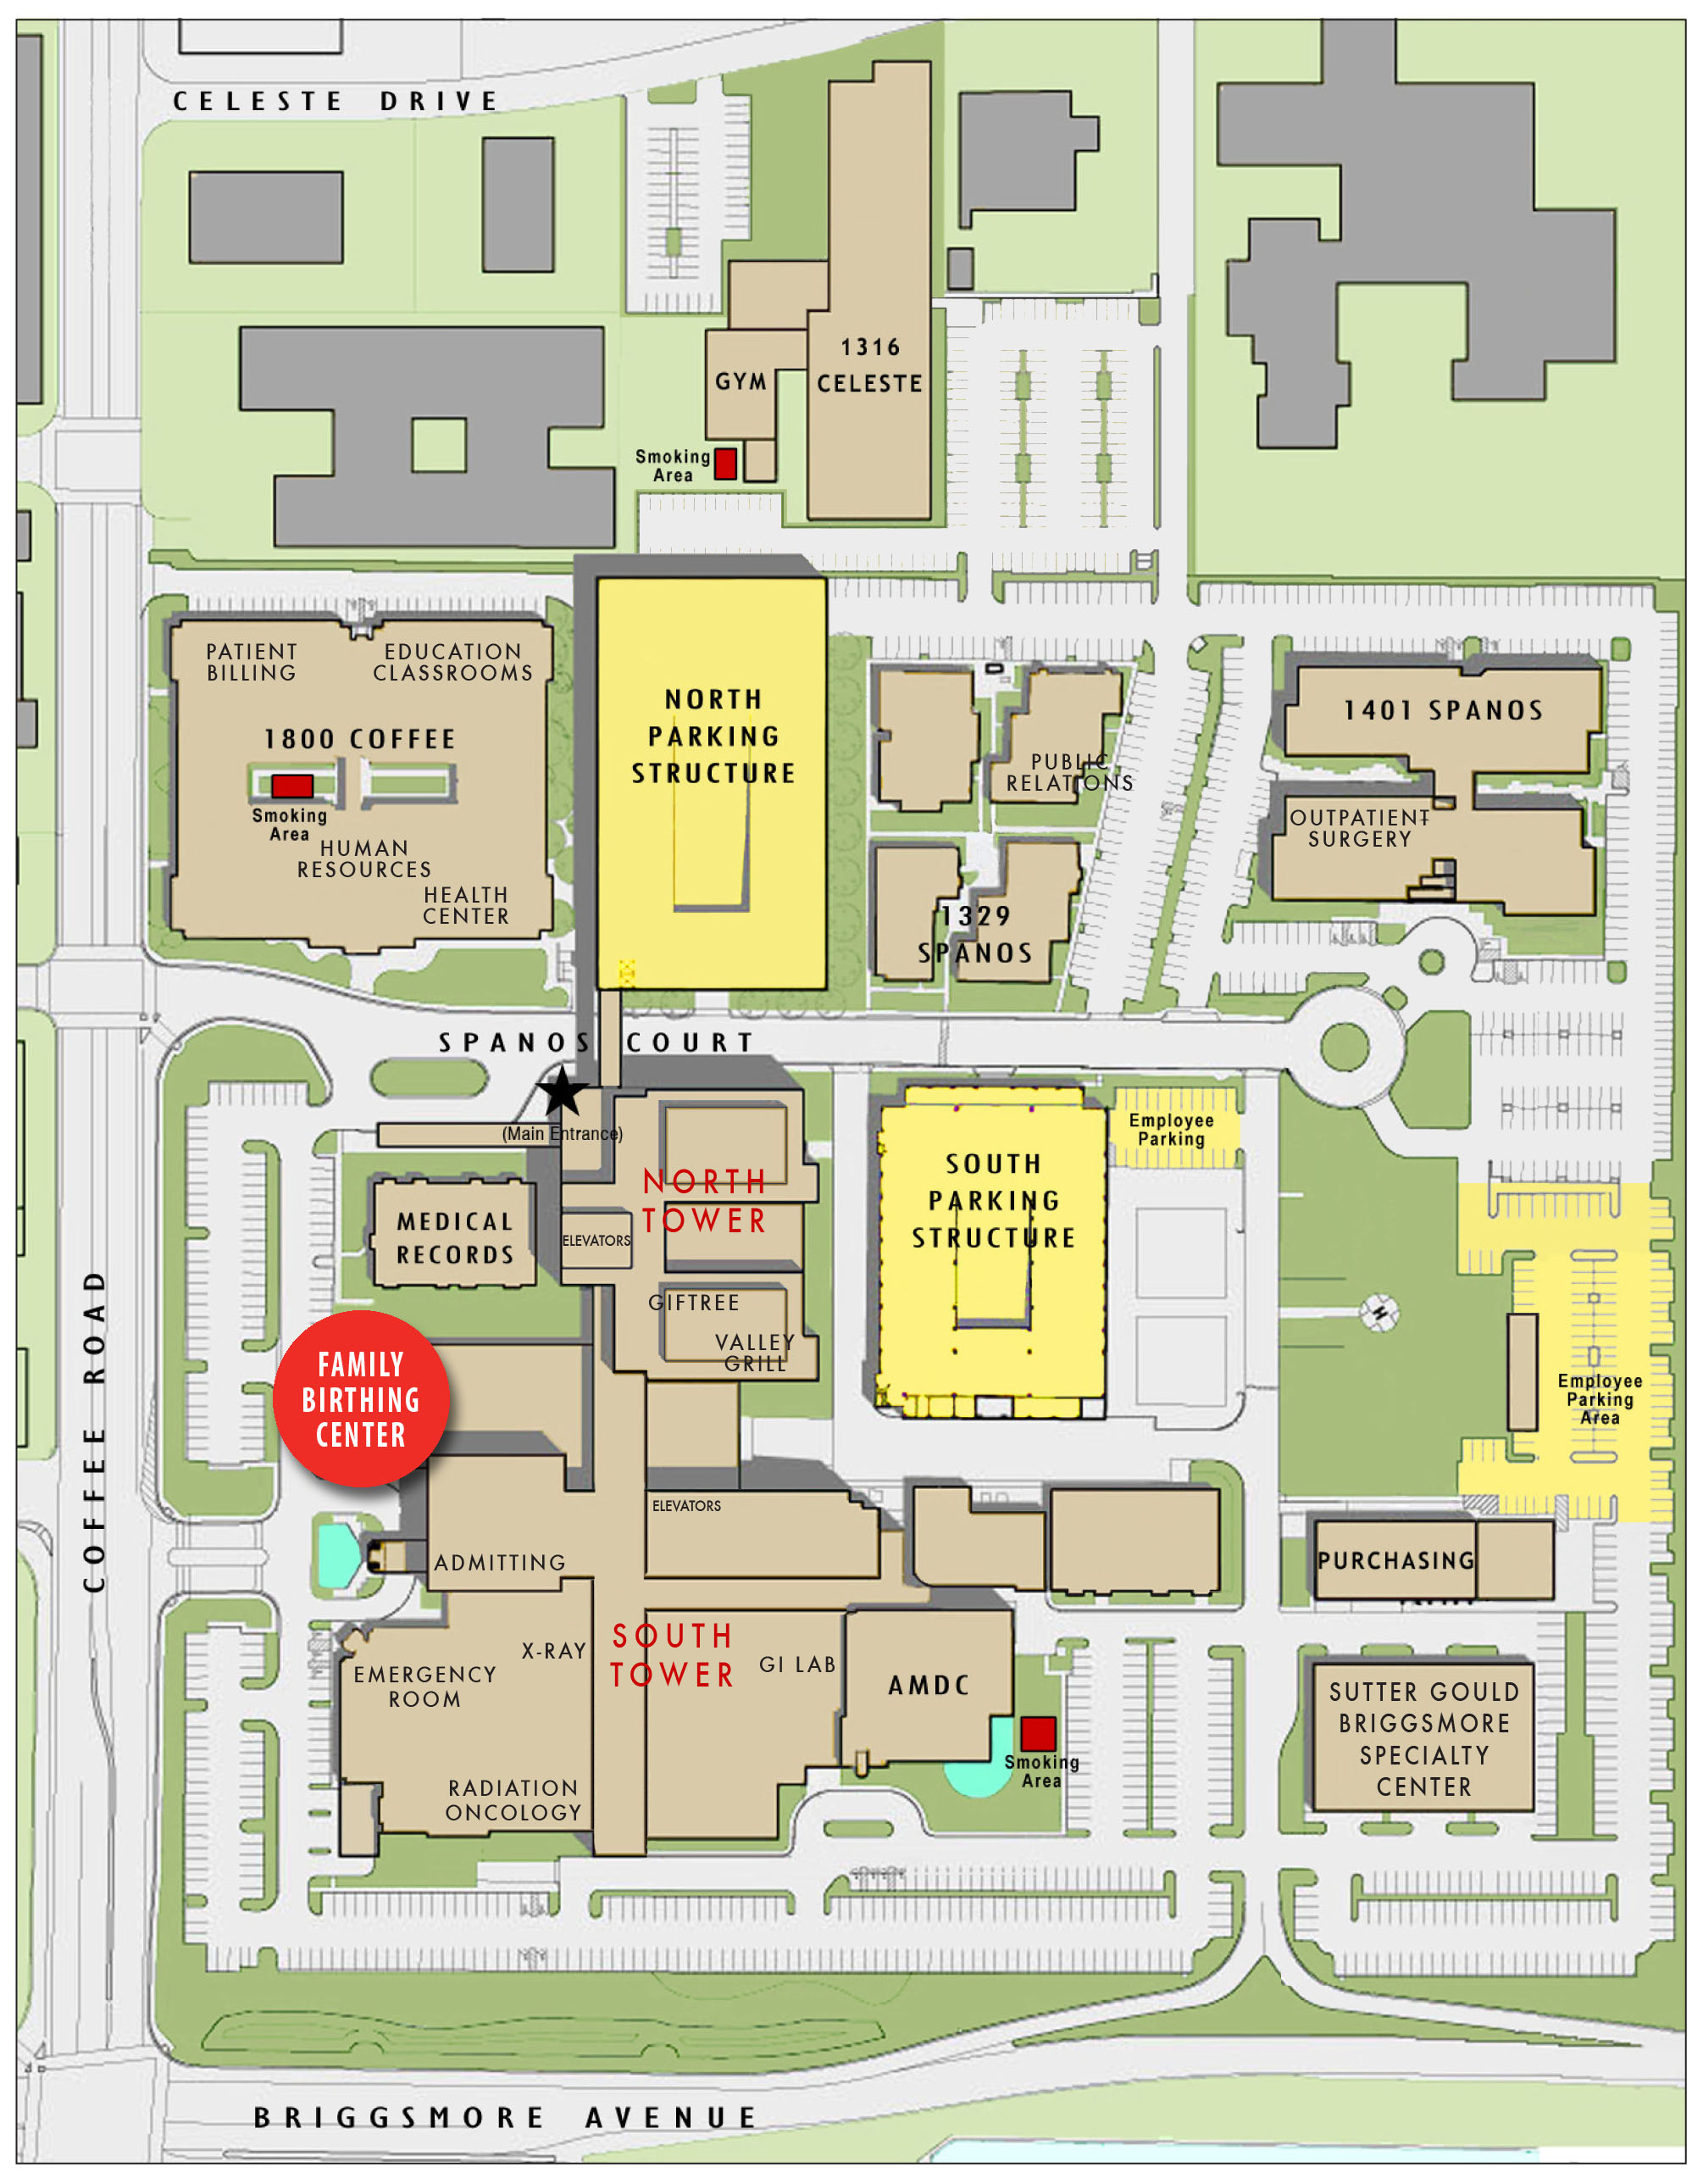 Vanderbilt Campus Map Pdf